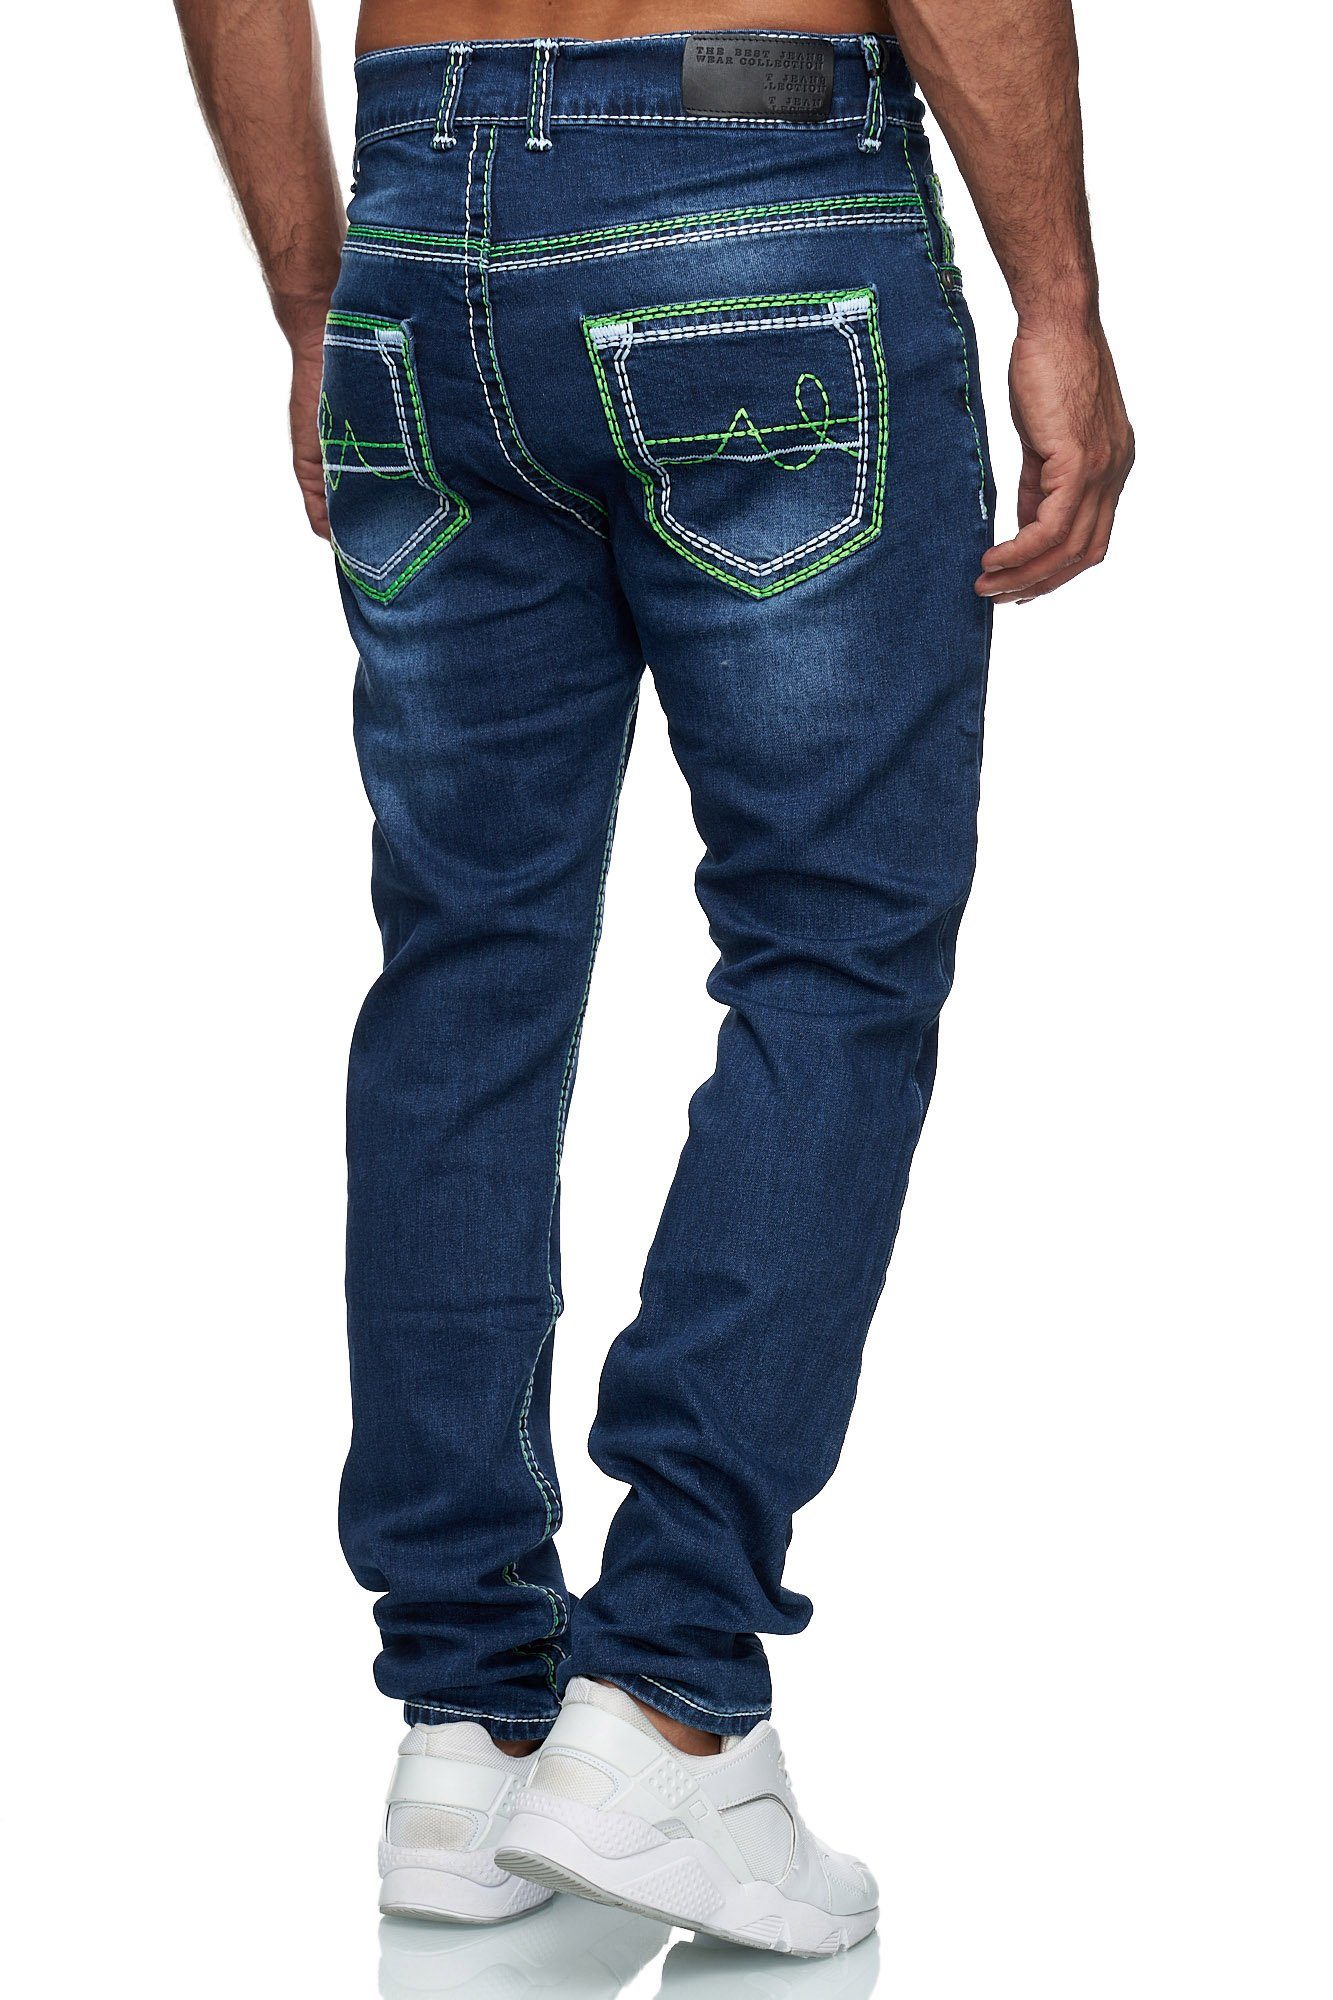 Neon-Naht Stonewashed Regular-fit-Jeans Herren Stretch Dicke Jeans Straight 20897-2 Grun Baxboy Denim Fit